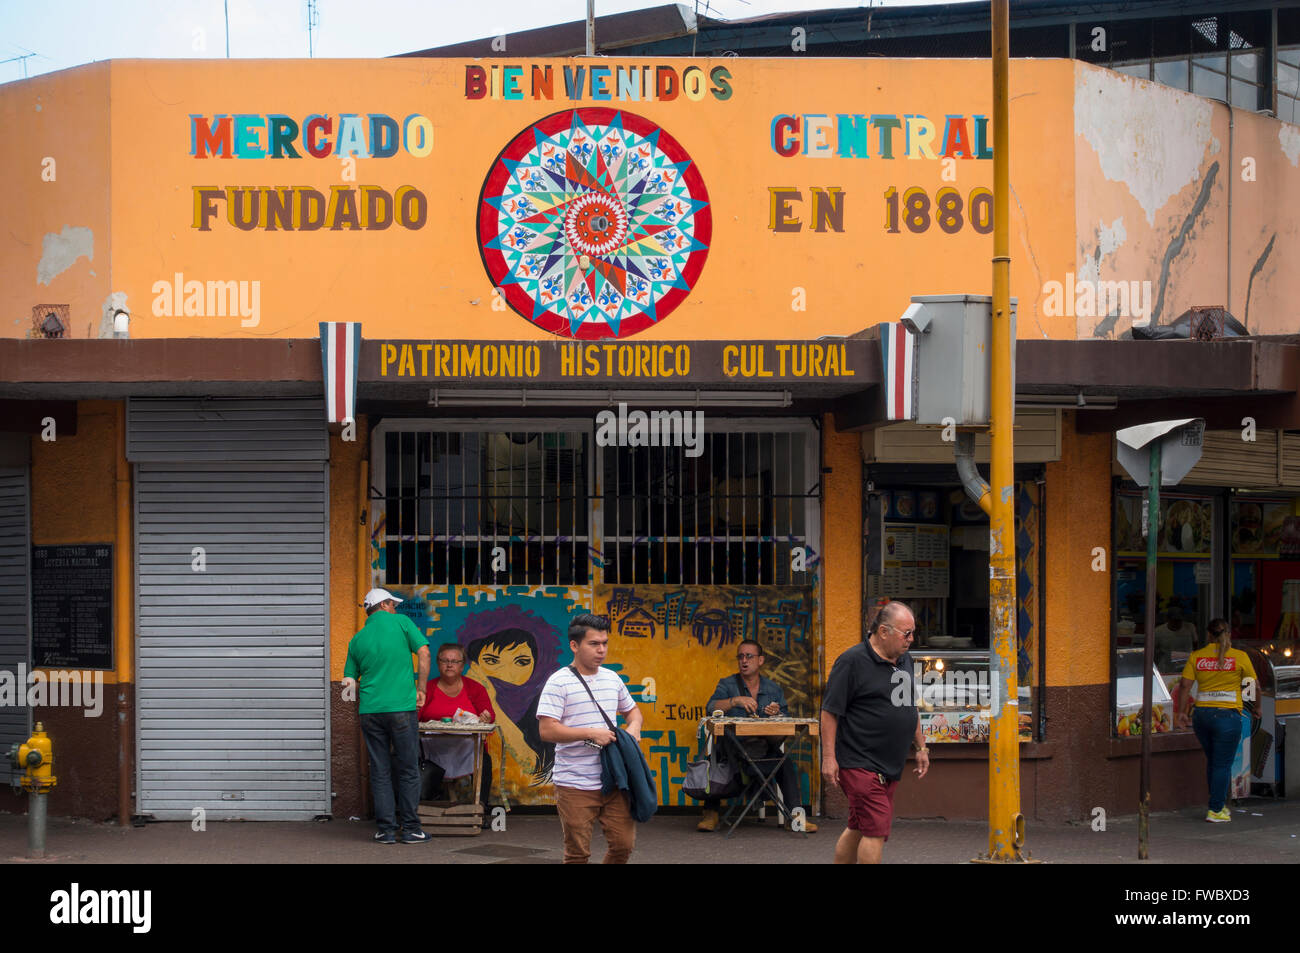 La entrada principal del Mercado Central, en la Avenida Central con ticos venta de billetes de lotería en San José, Costa Rica. Foto de stock